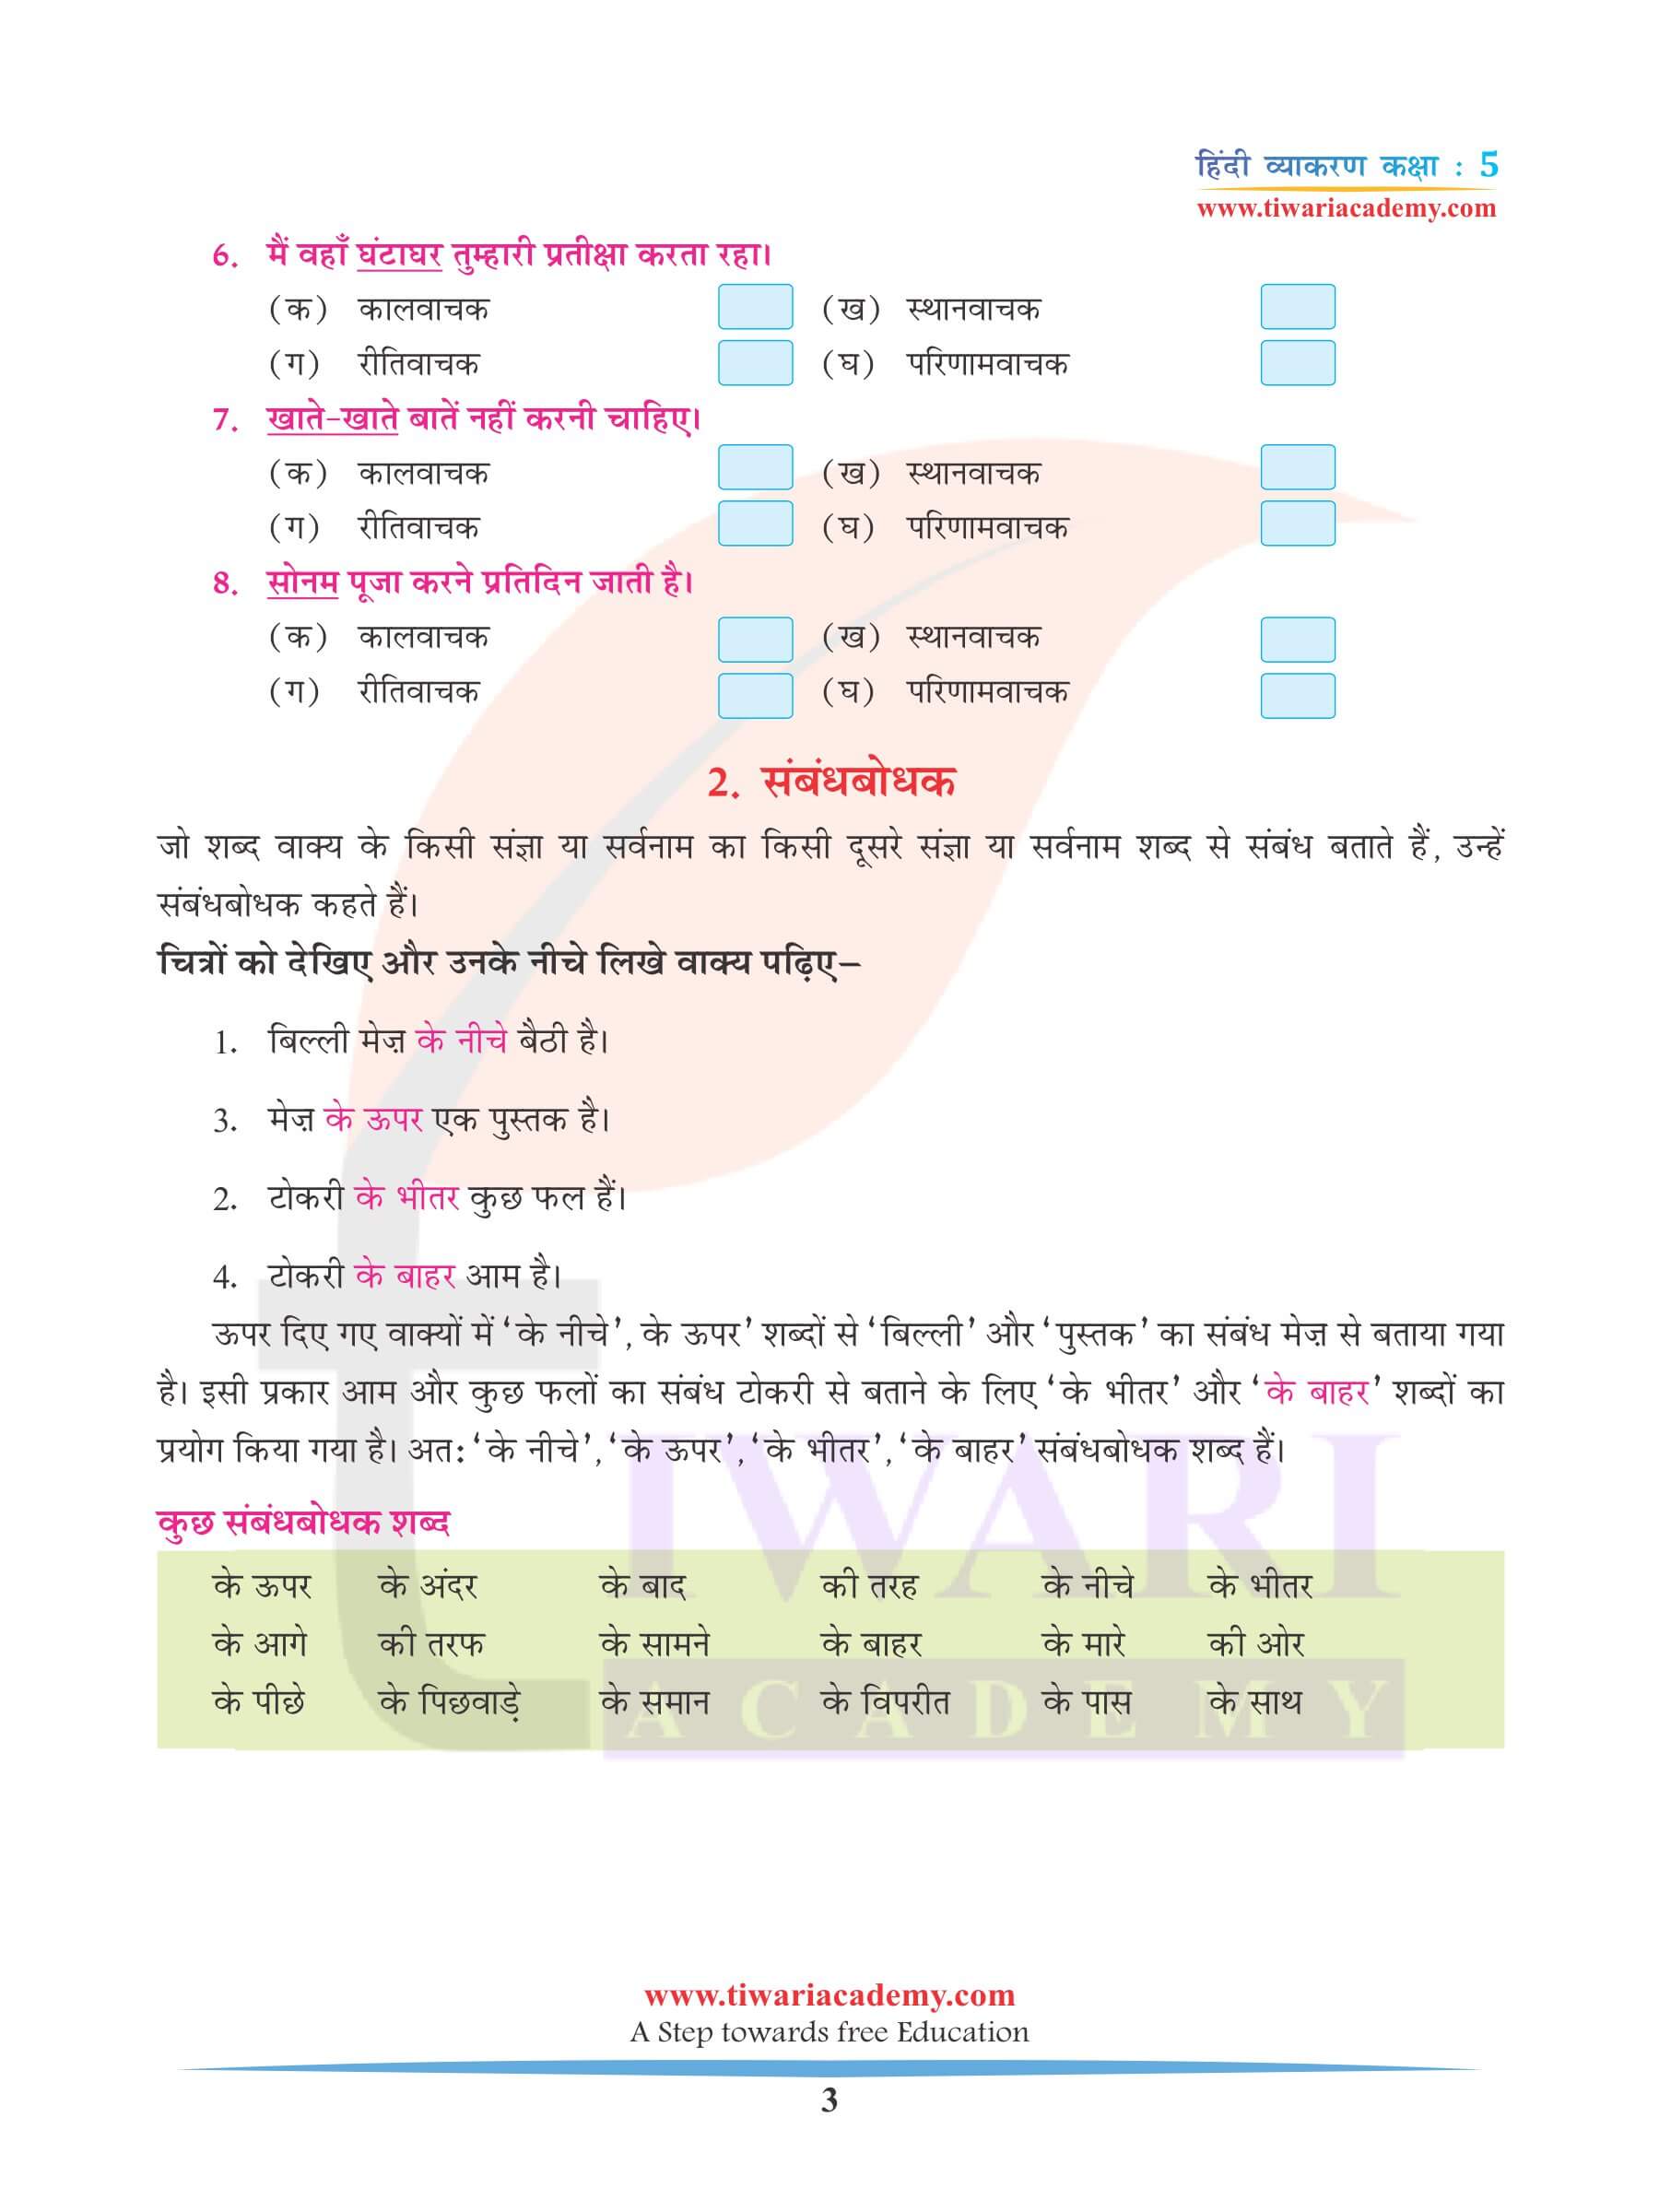 कक्षा 5 हिंदी व्याकरण अध्याय 9 अविकारी शब्द के प्रश्न उत्तर